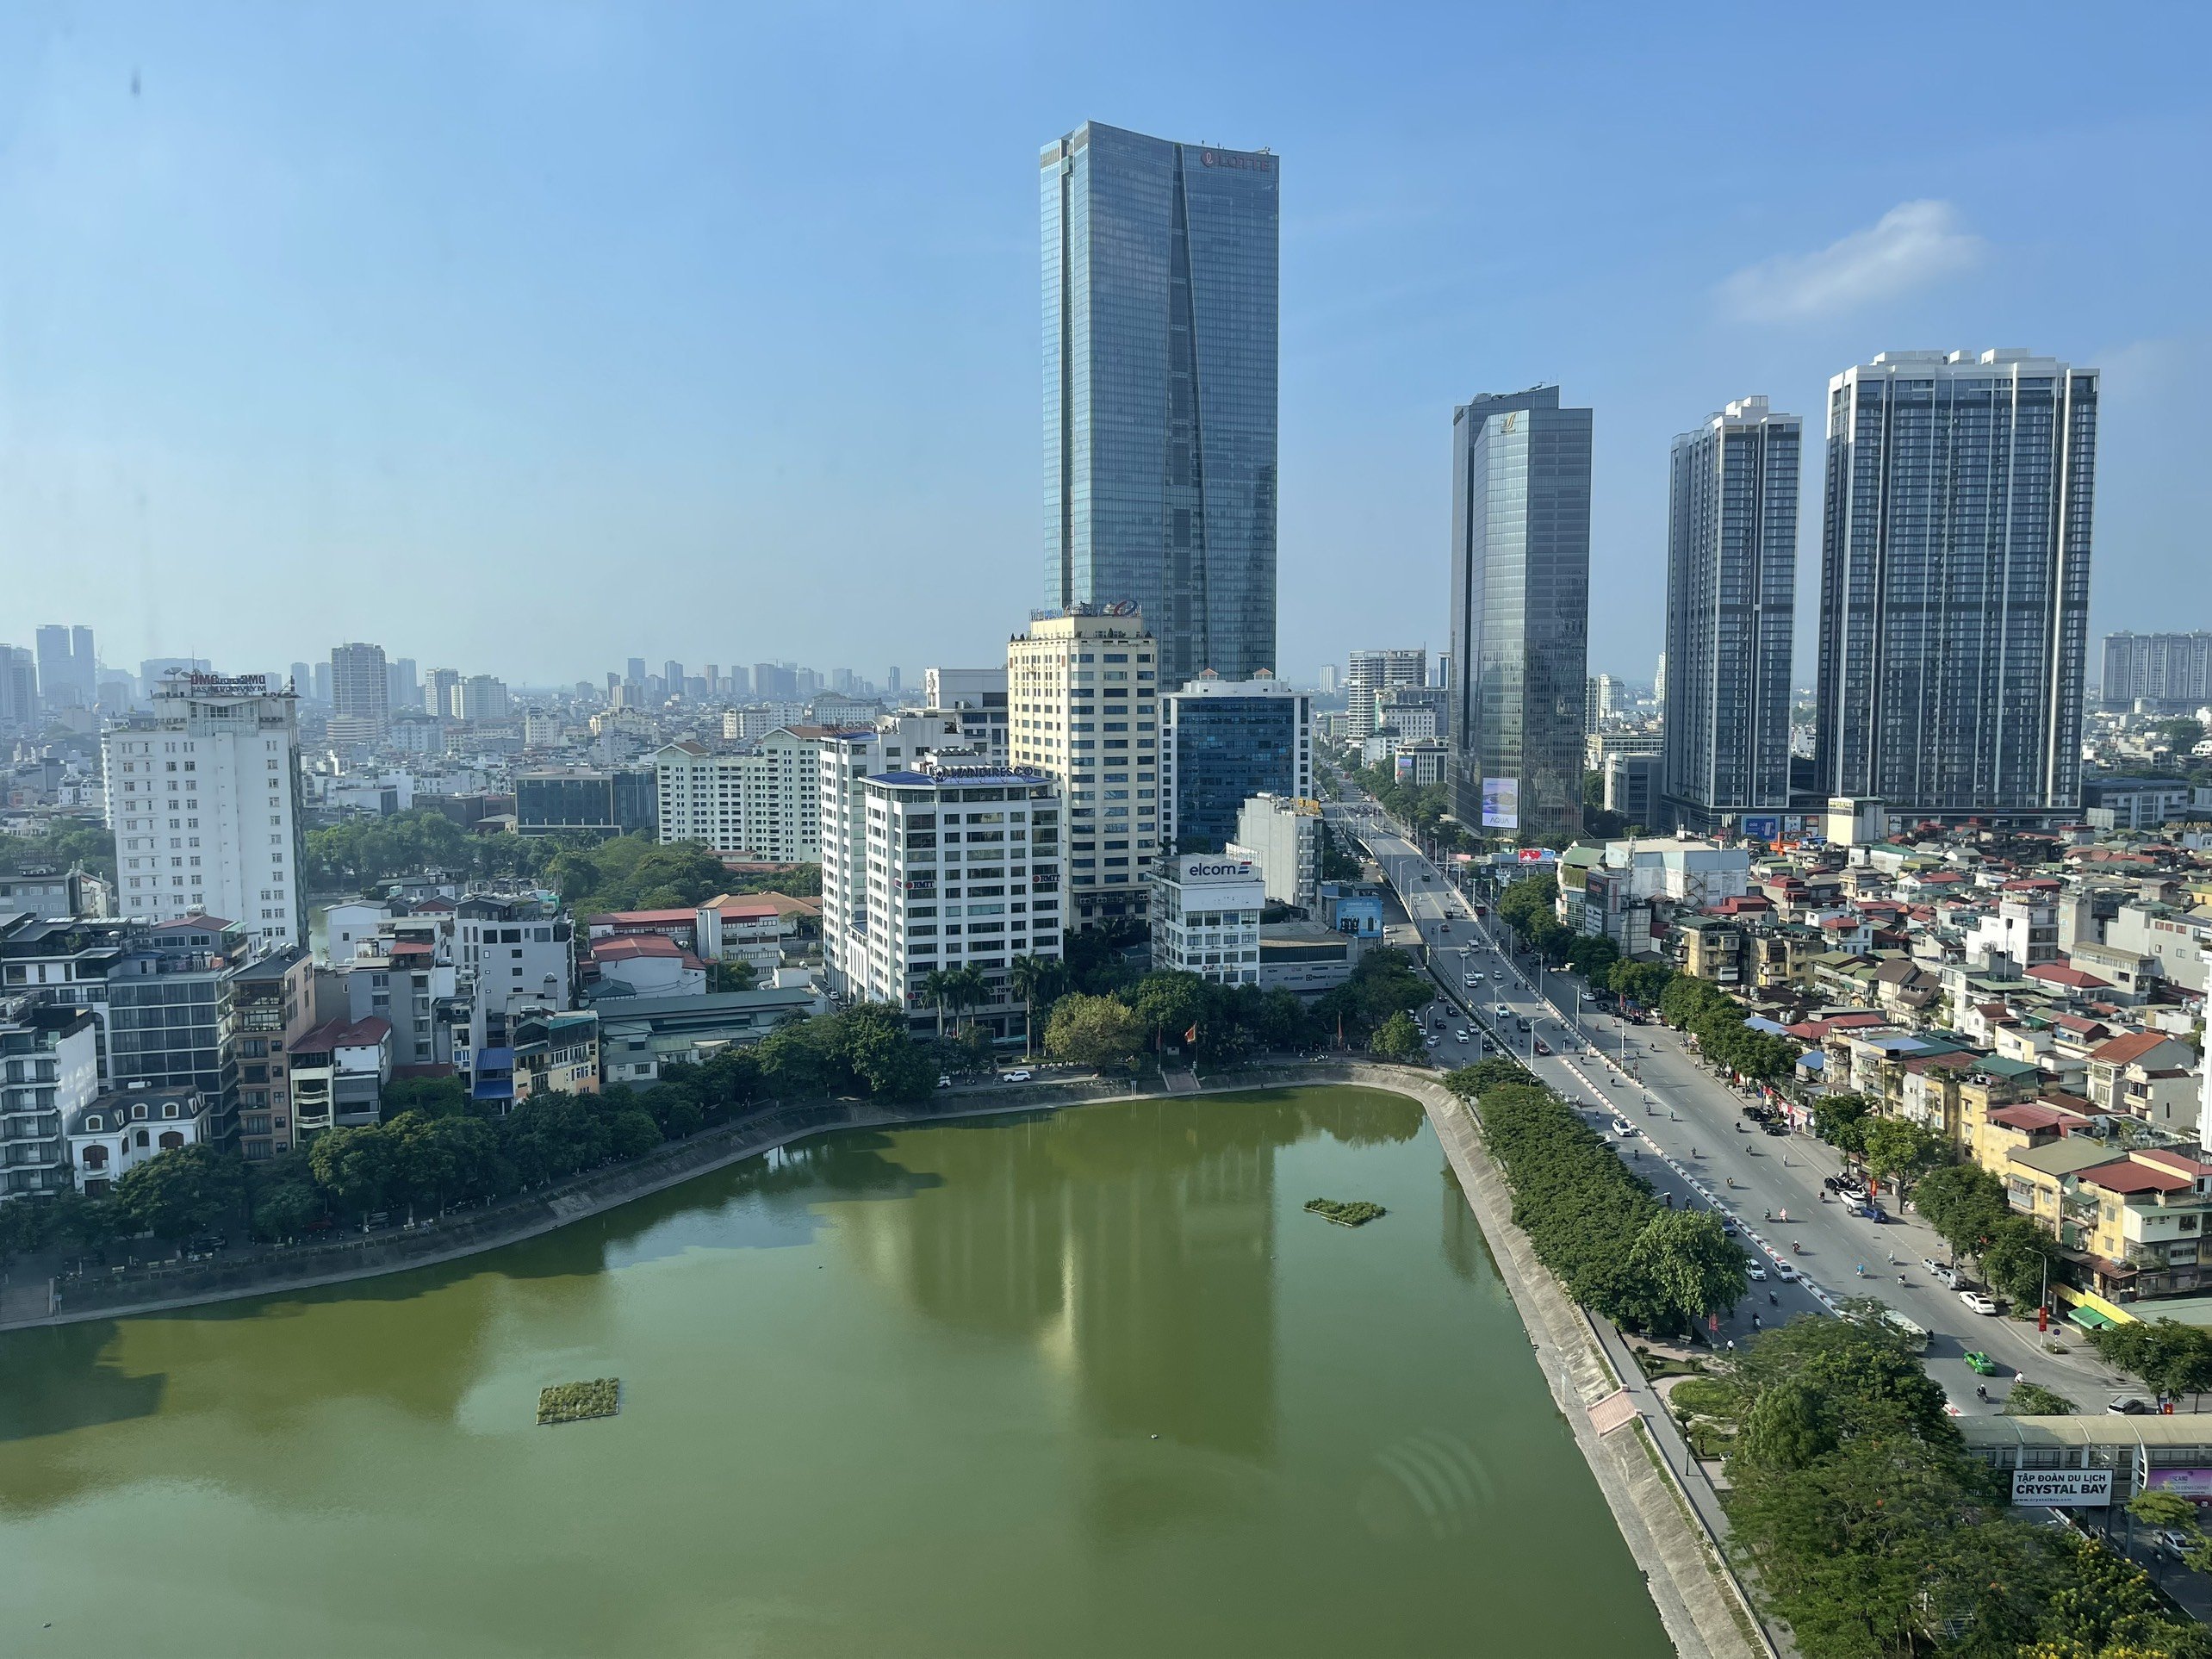 Văn phòng cho thuê giá tốt mặt bằng đẹp view hồ Ngọc Khánh quận Ba Đình- Ngọc Khánh Plaza 2